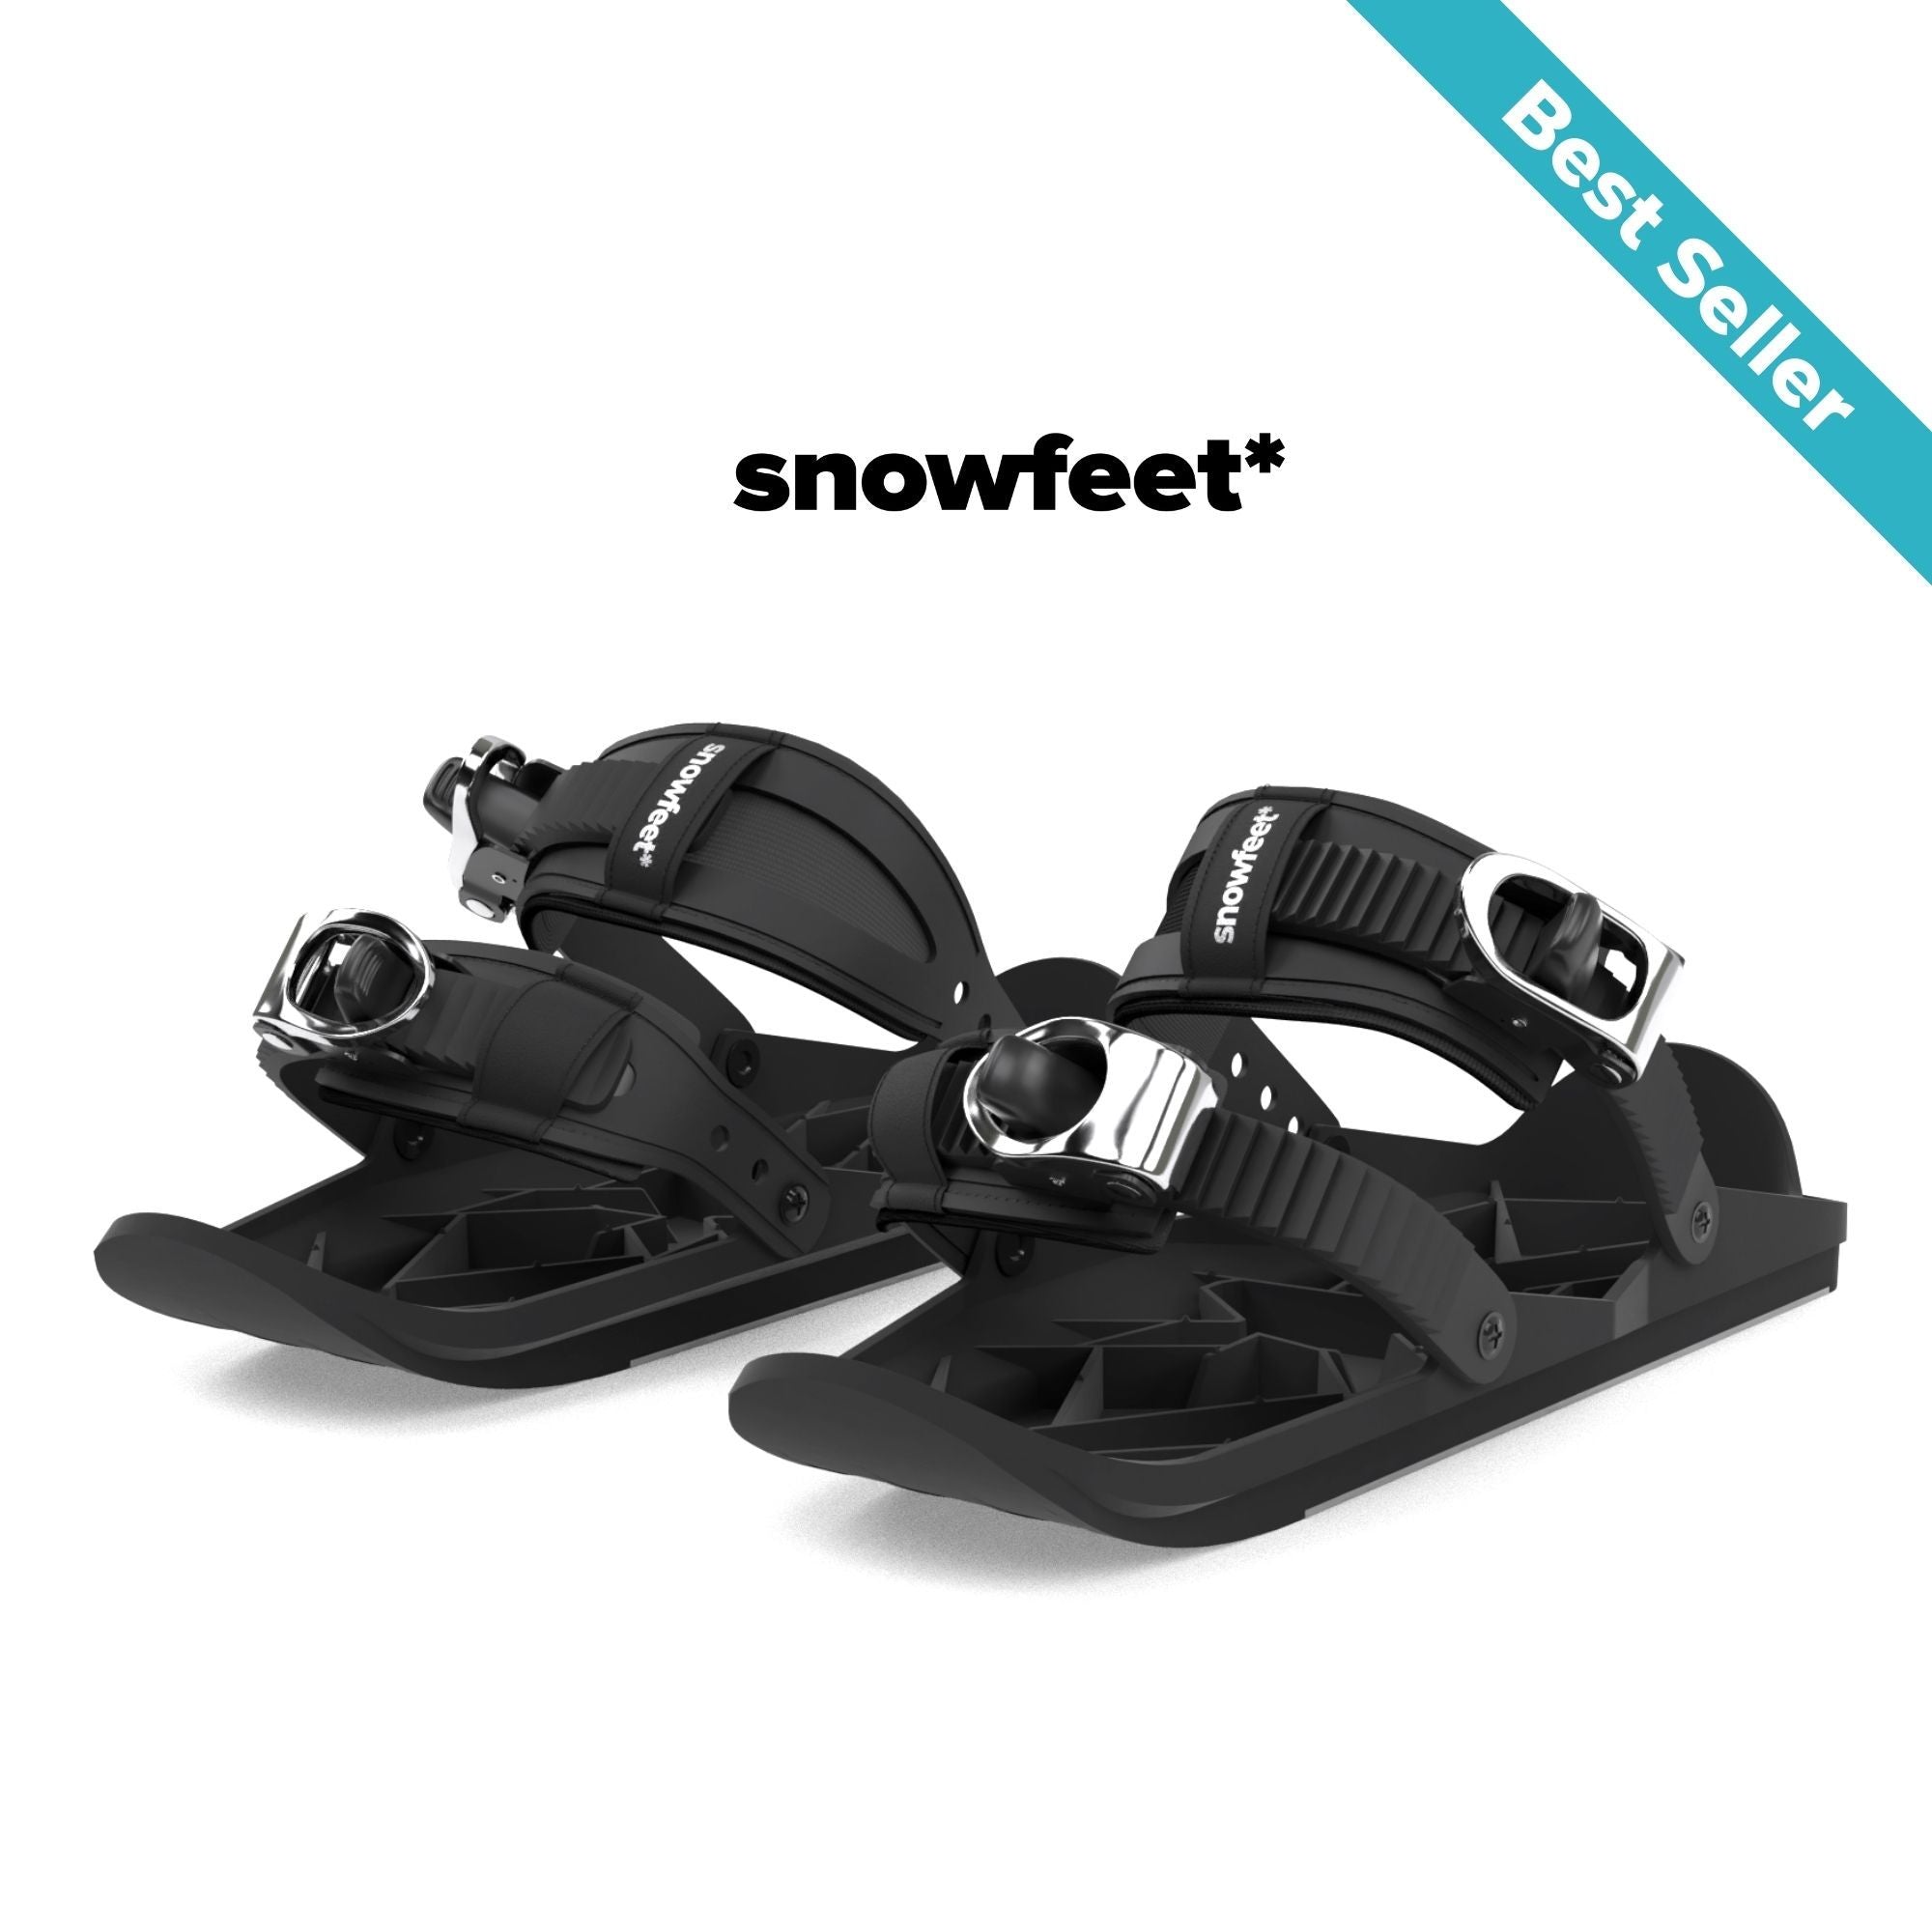 Snowfeet - Mini Ski Skates For Snow | Official Snowfeet® Store